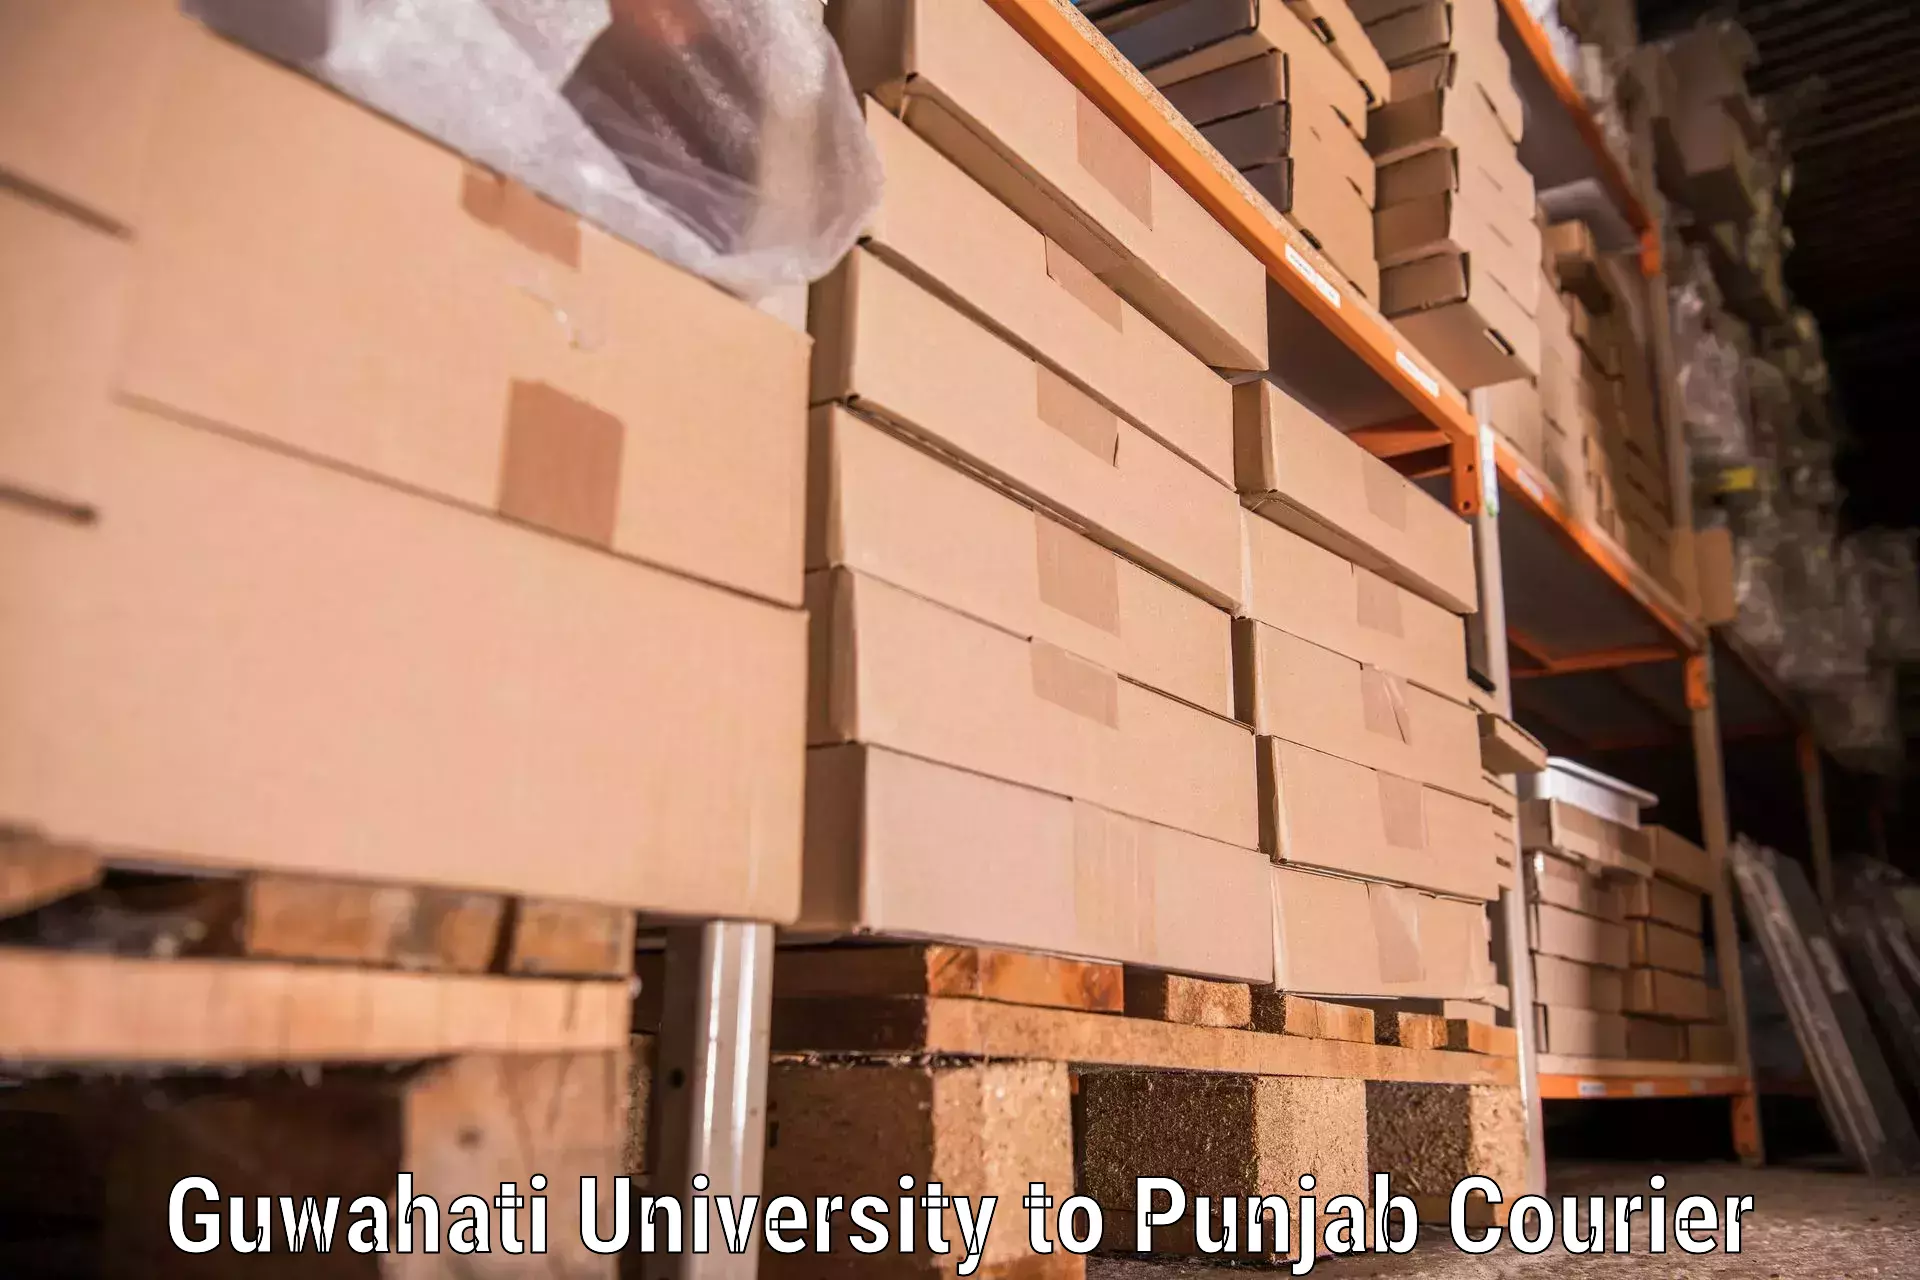 Quality furniture transport Guwahati University to Punjab